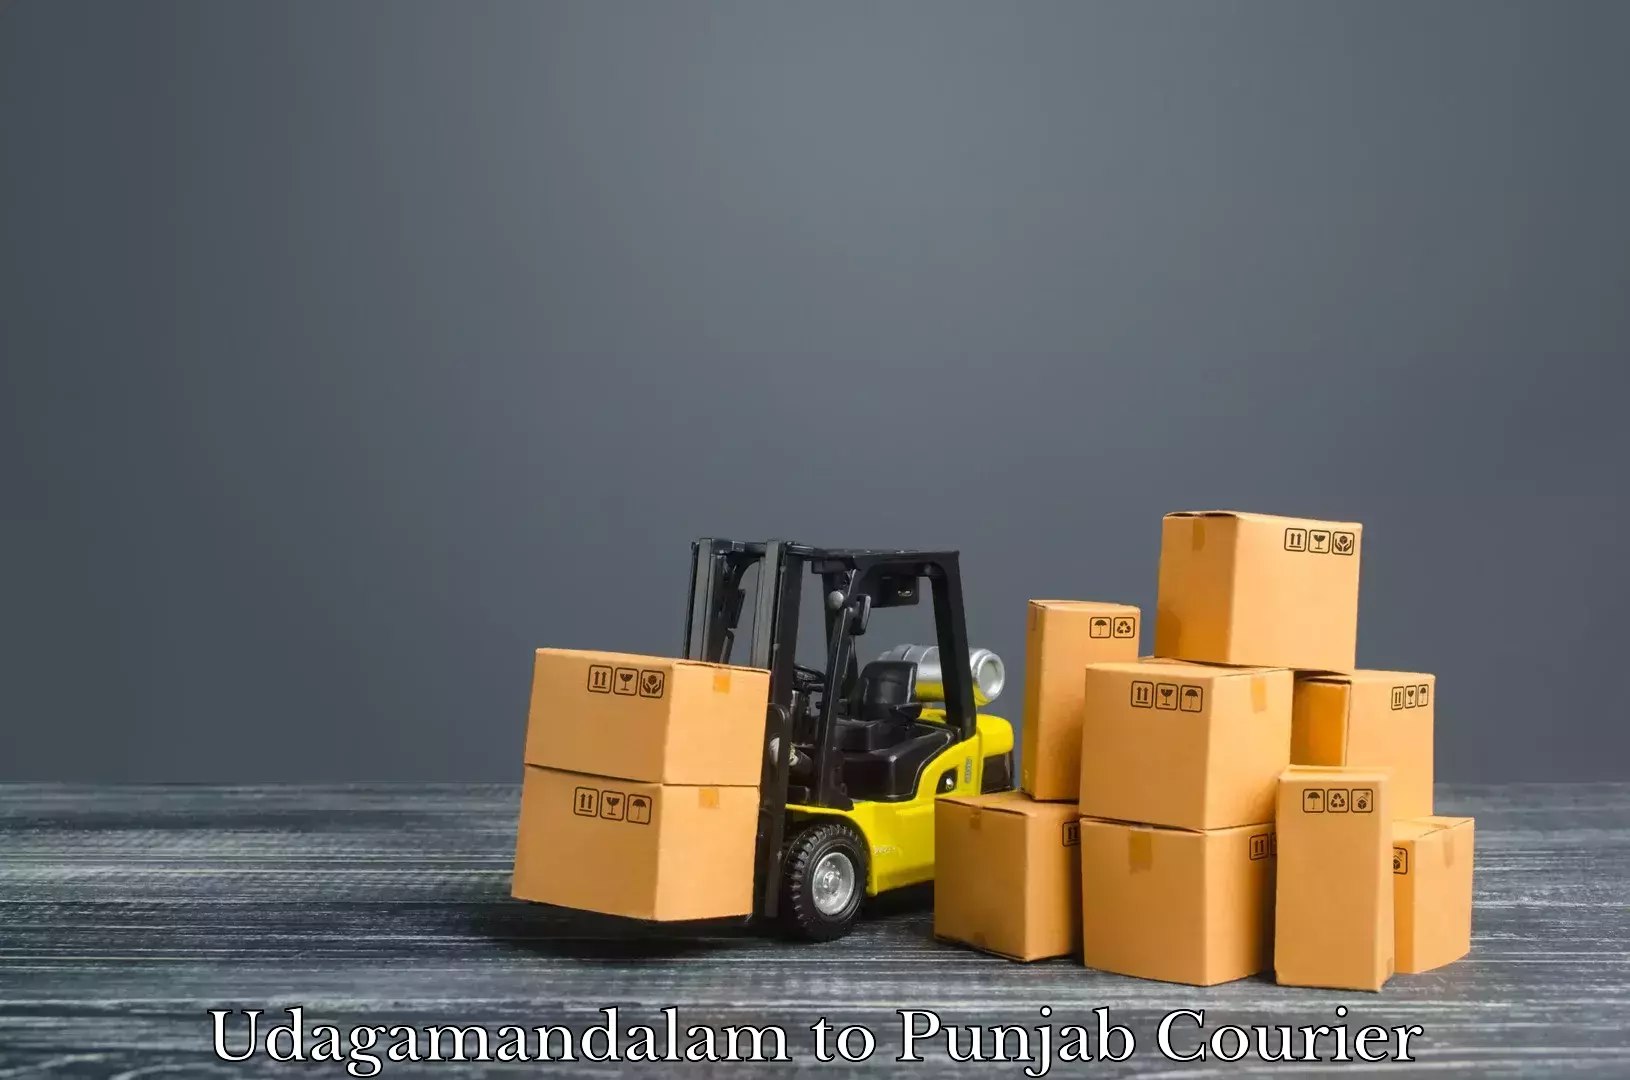 Baggage shipping logistics Udagamandalam to Punjab